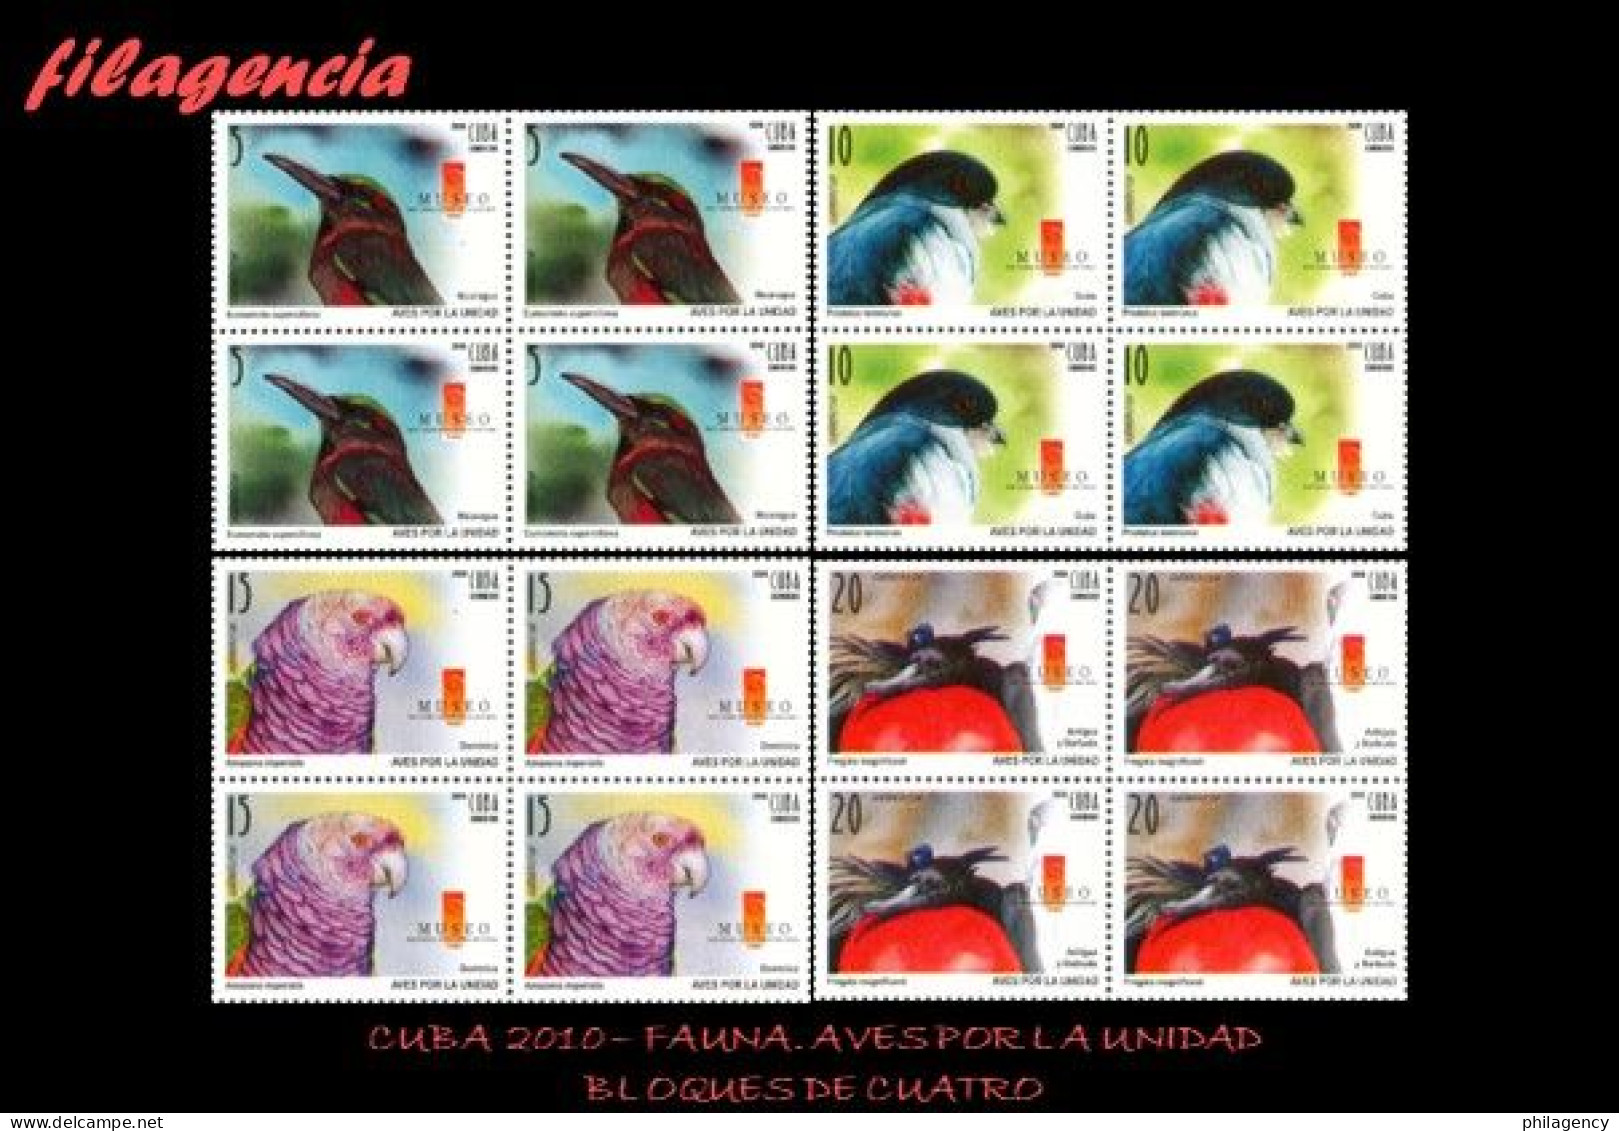 CUBA. BLOQUES DE CUATRO. 2010-25 FAUNA. AVES POR LA UNIDAD. PRIMERA SERIE - Unused Stamps